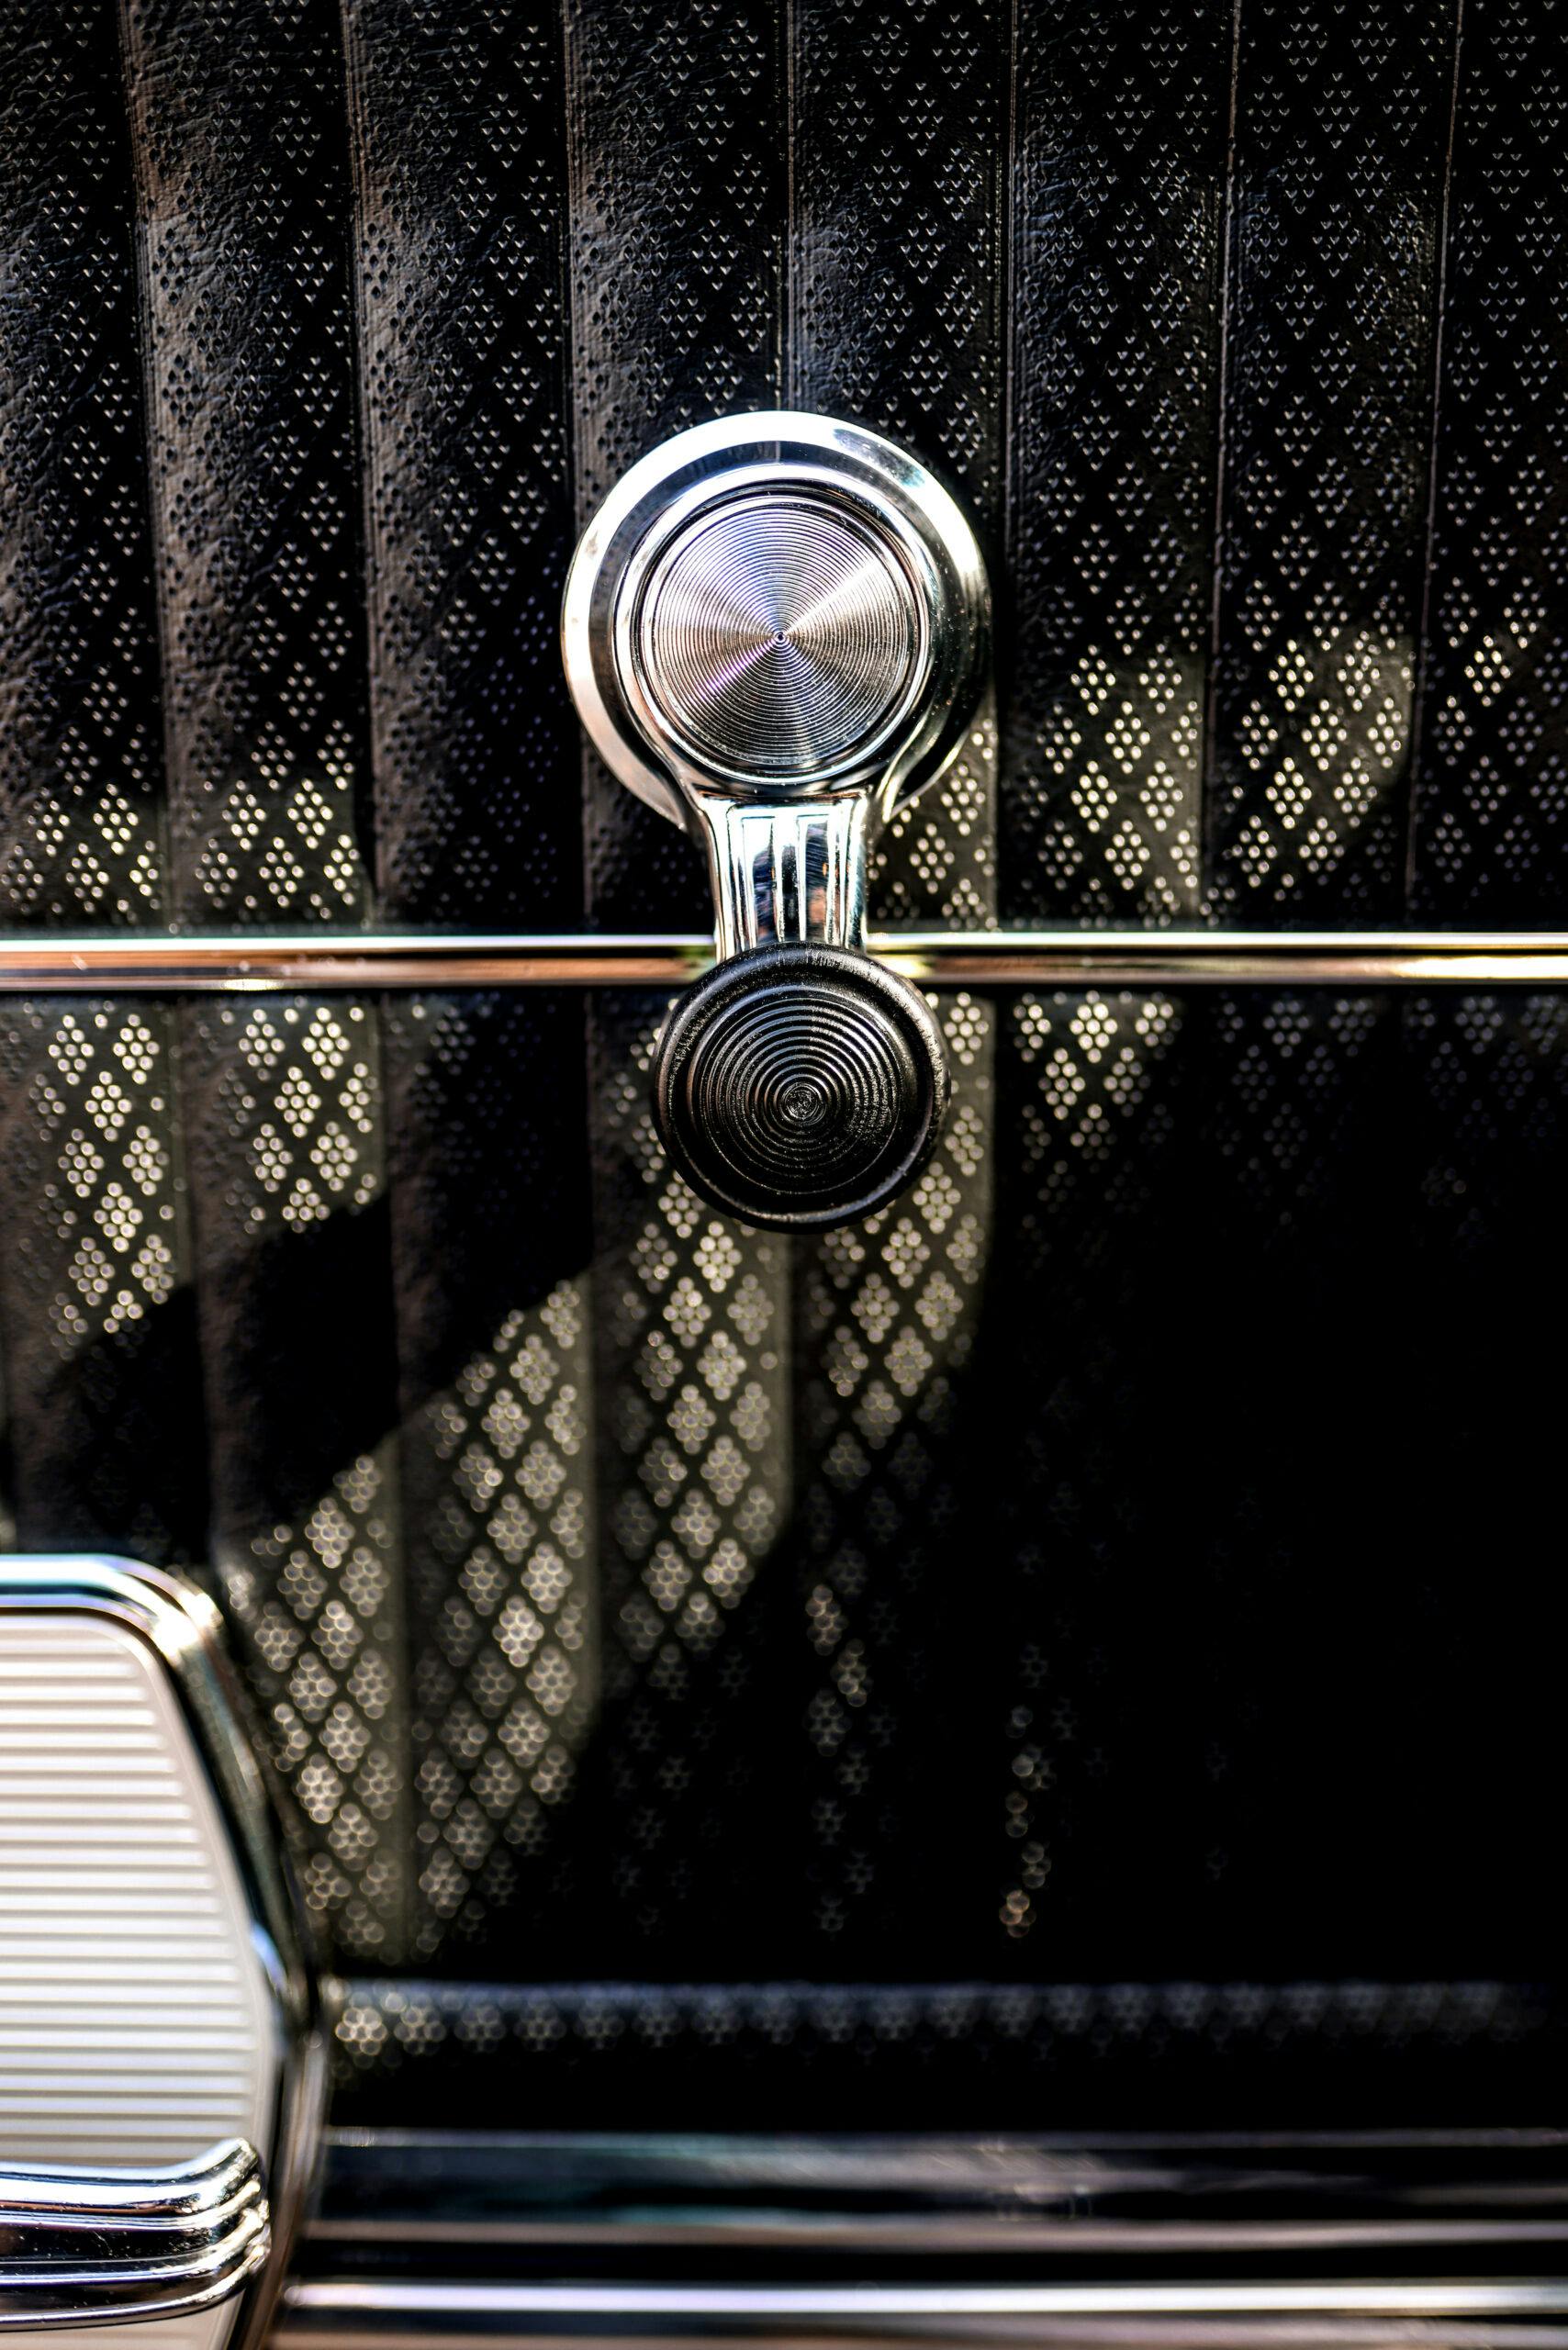 1968 Hurst Oldsmobile door crank detail